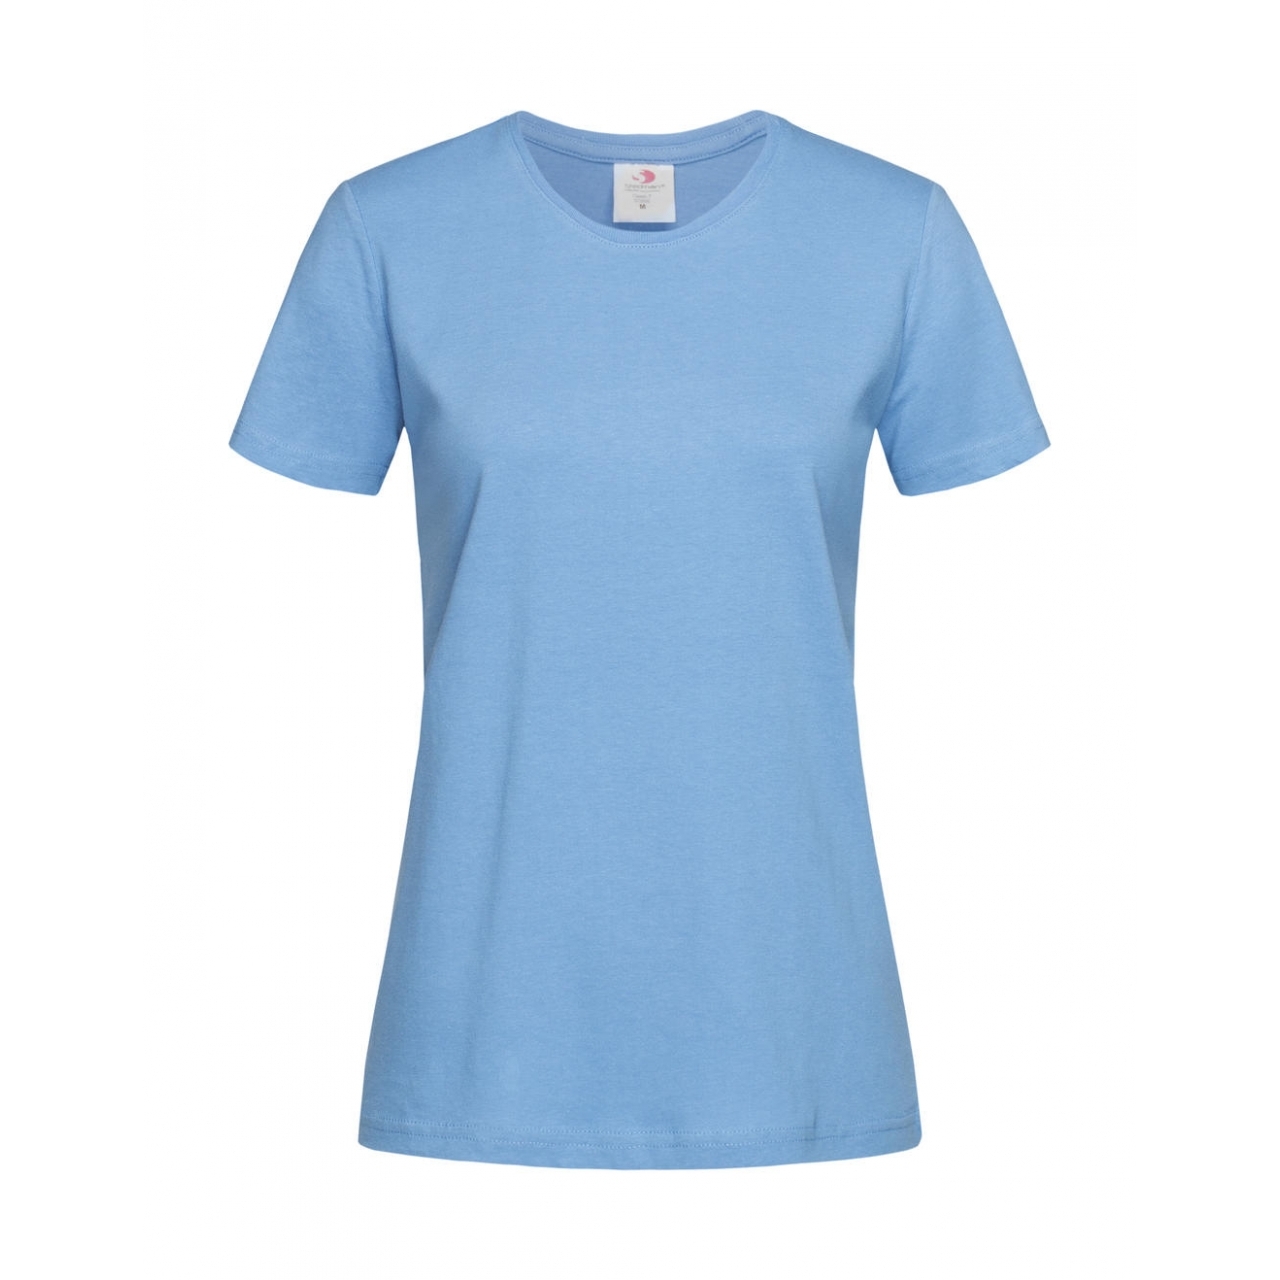 Tričko dámské Stedman Fitted s kulatým výstřihem - světle modré, XXL